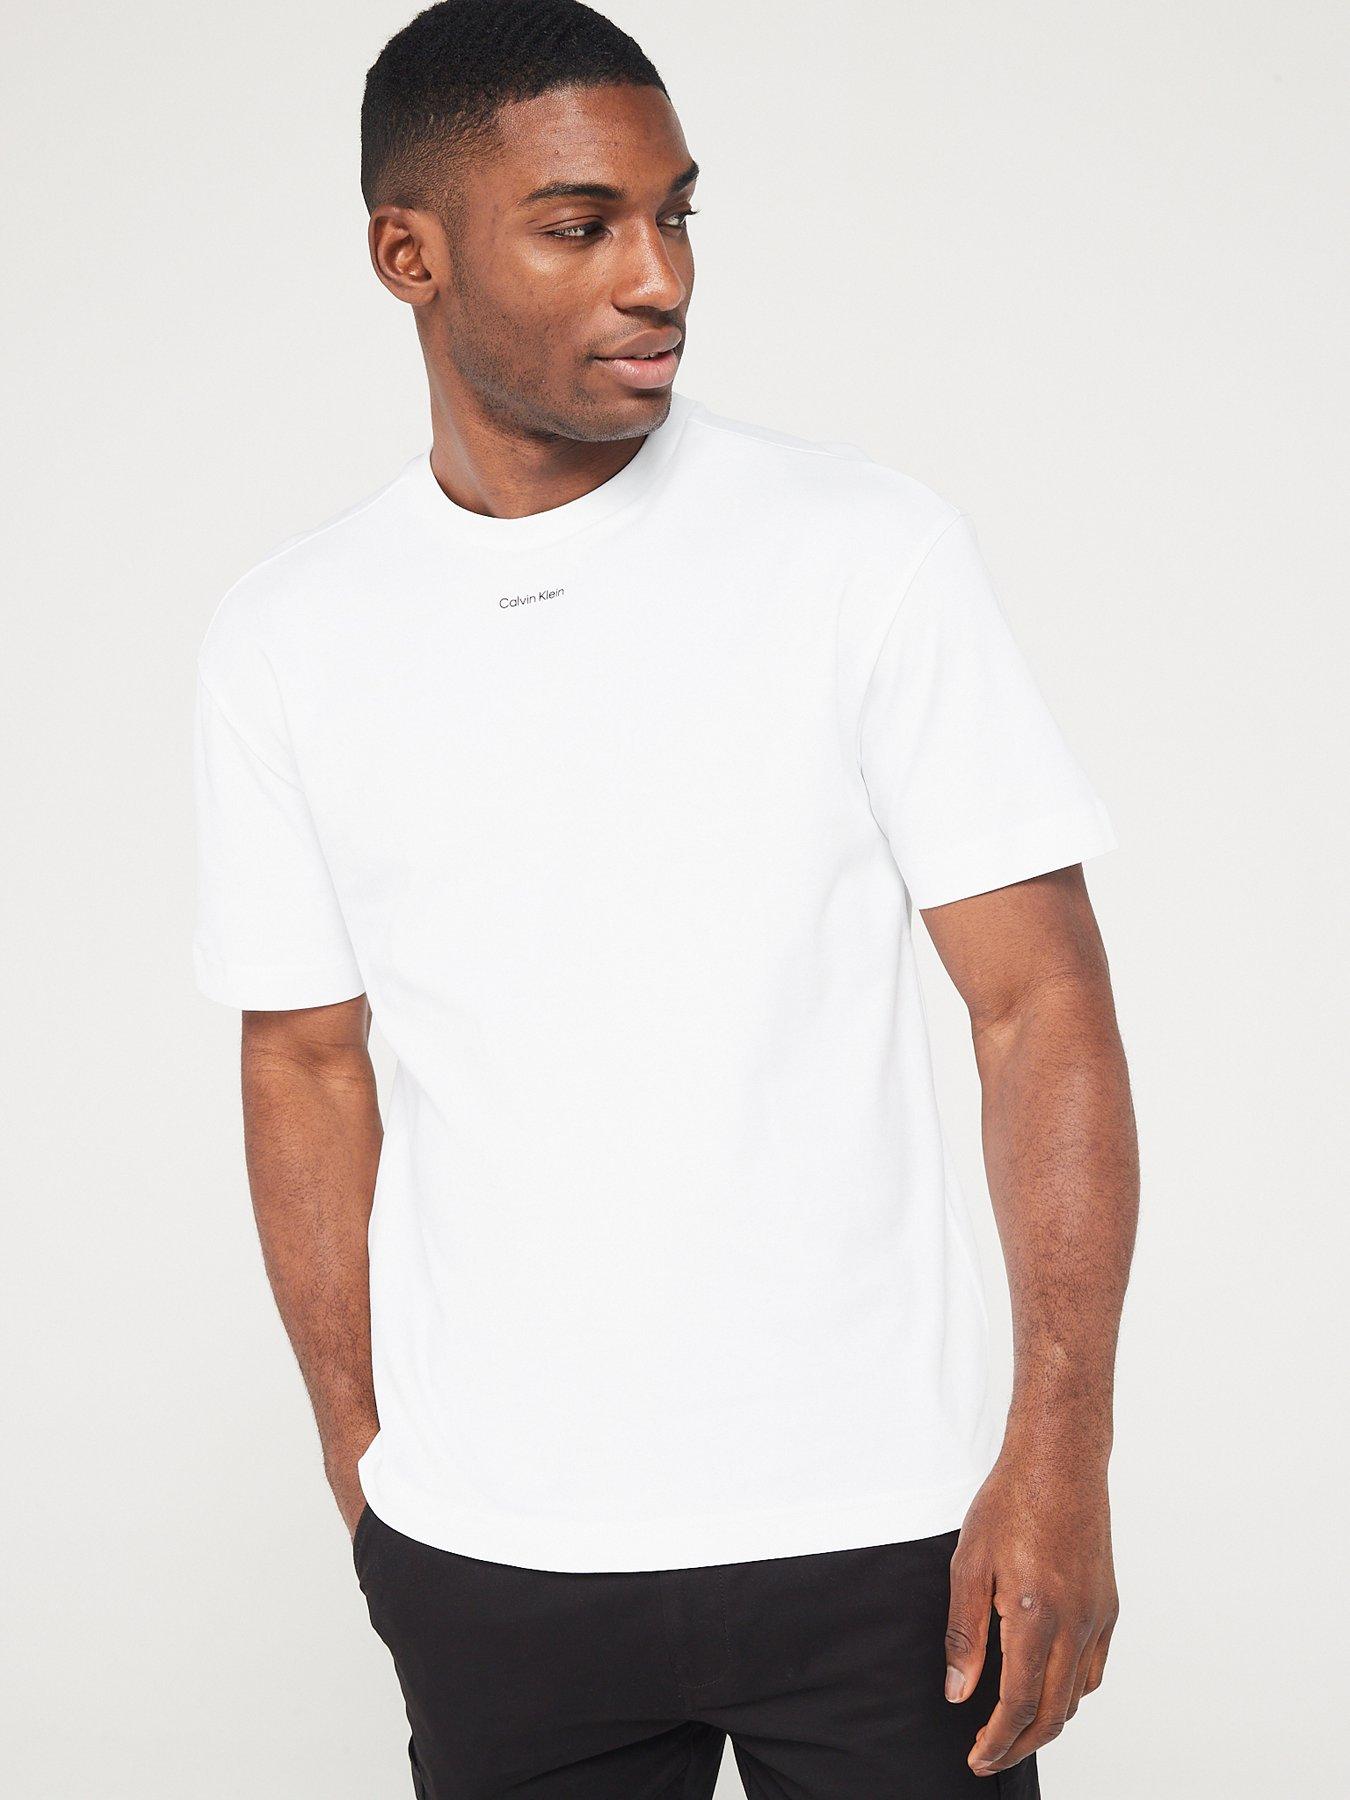 https://media.very.co.uk/i/very/VSG1I_SQ1_0000000013_WHITE_MDf/calvin-klein-nano-logo-interlock-t-shirt-white.jpg?$180x240_retinamobilex2$